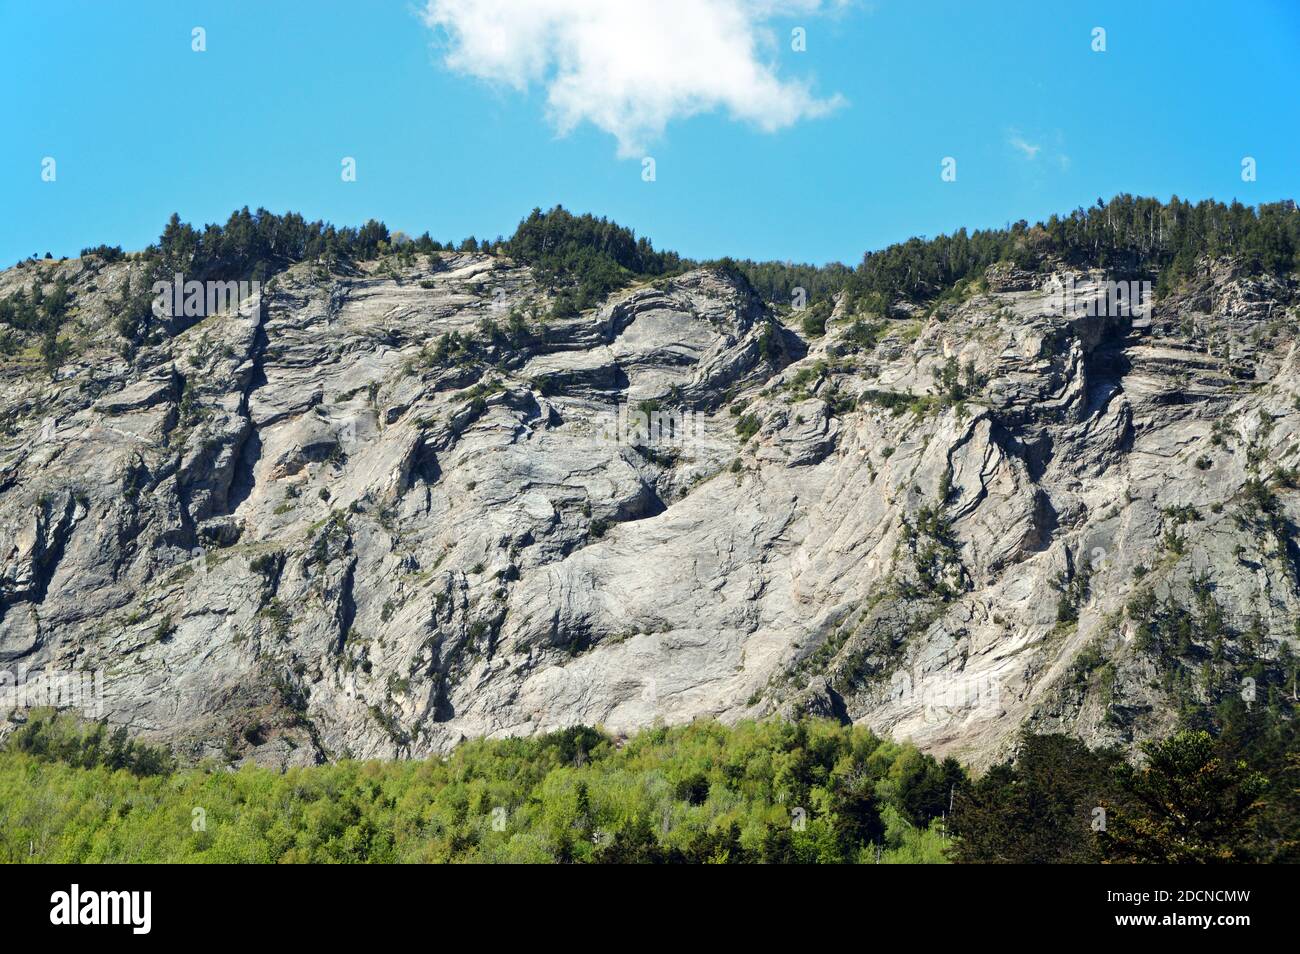 La forêt de Gerdar est une forêt d'épicéa située sur les pentes méridionales des Pyrénées, dans le parc national d'Aigüestortes et d'Estany de Sant Maurici. Banque D'Images